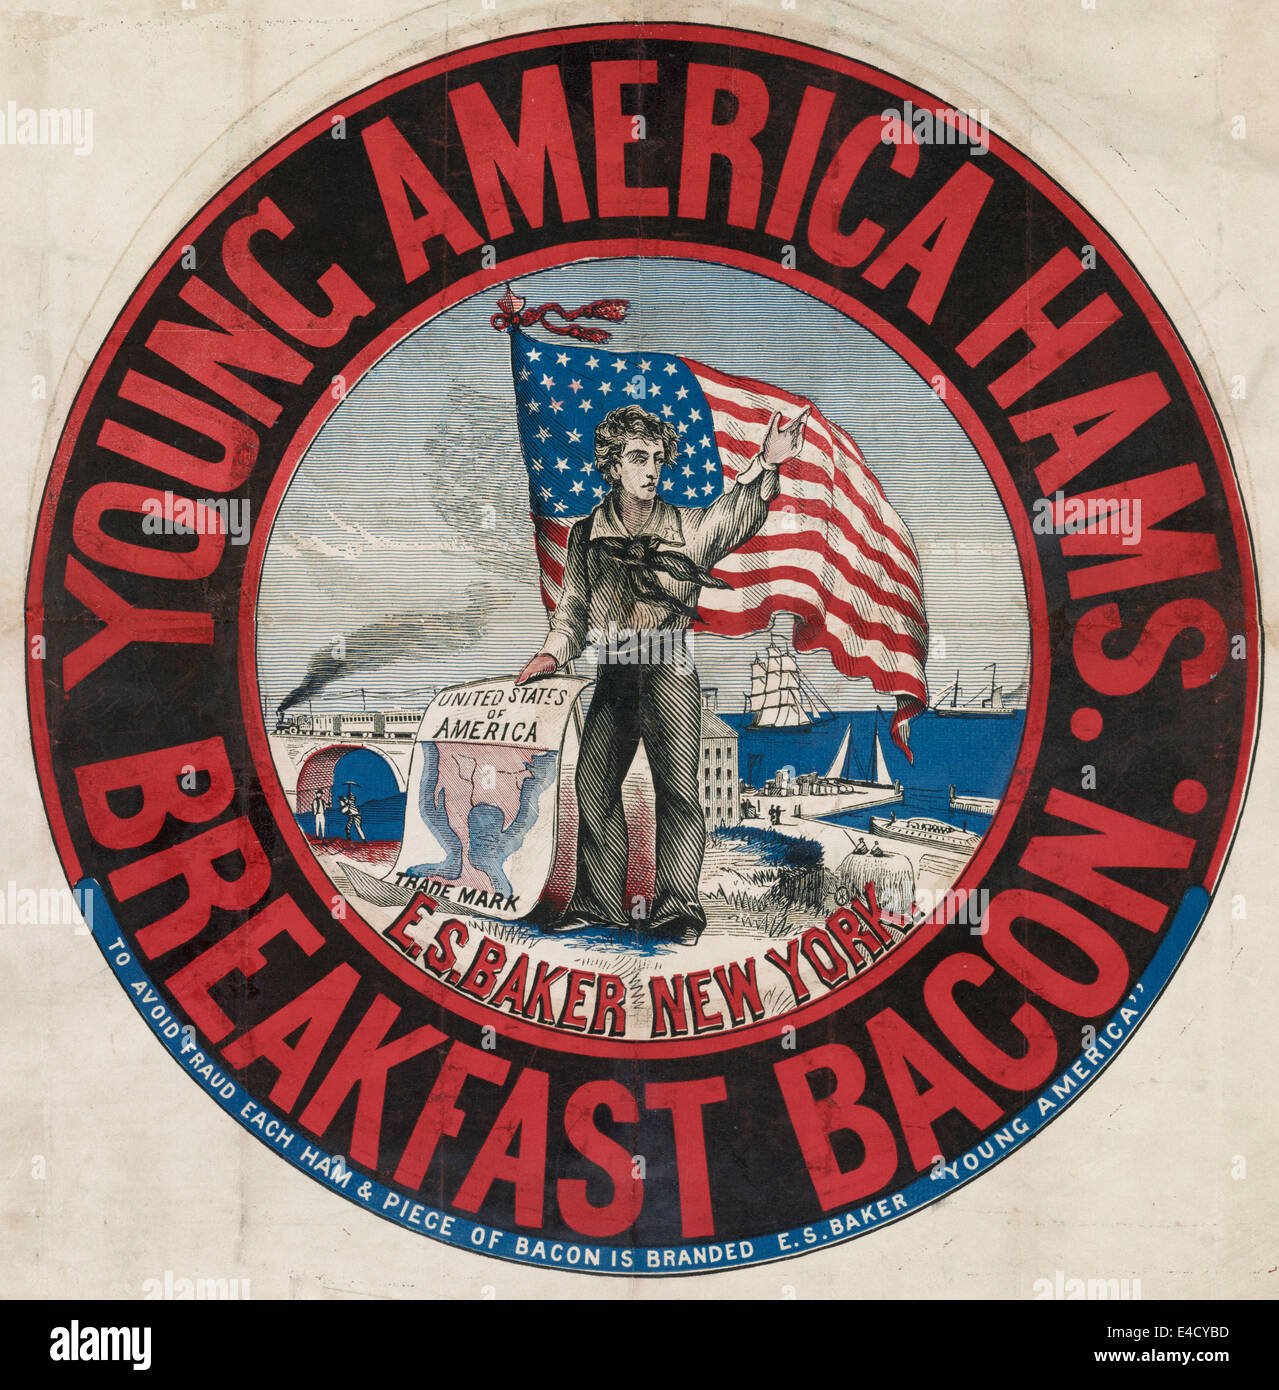 Young America Schinken und Frühstück Speck, e.s. Baker, New York - Werbung zeigt Seemann, steht man vor einer amerikanischen Flagge im Besitz Karte der Vereinigten Staaten; Hafen und Eisenbahn im Hintergrund, um 1870 Stockfoto